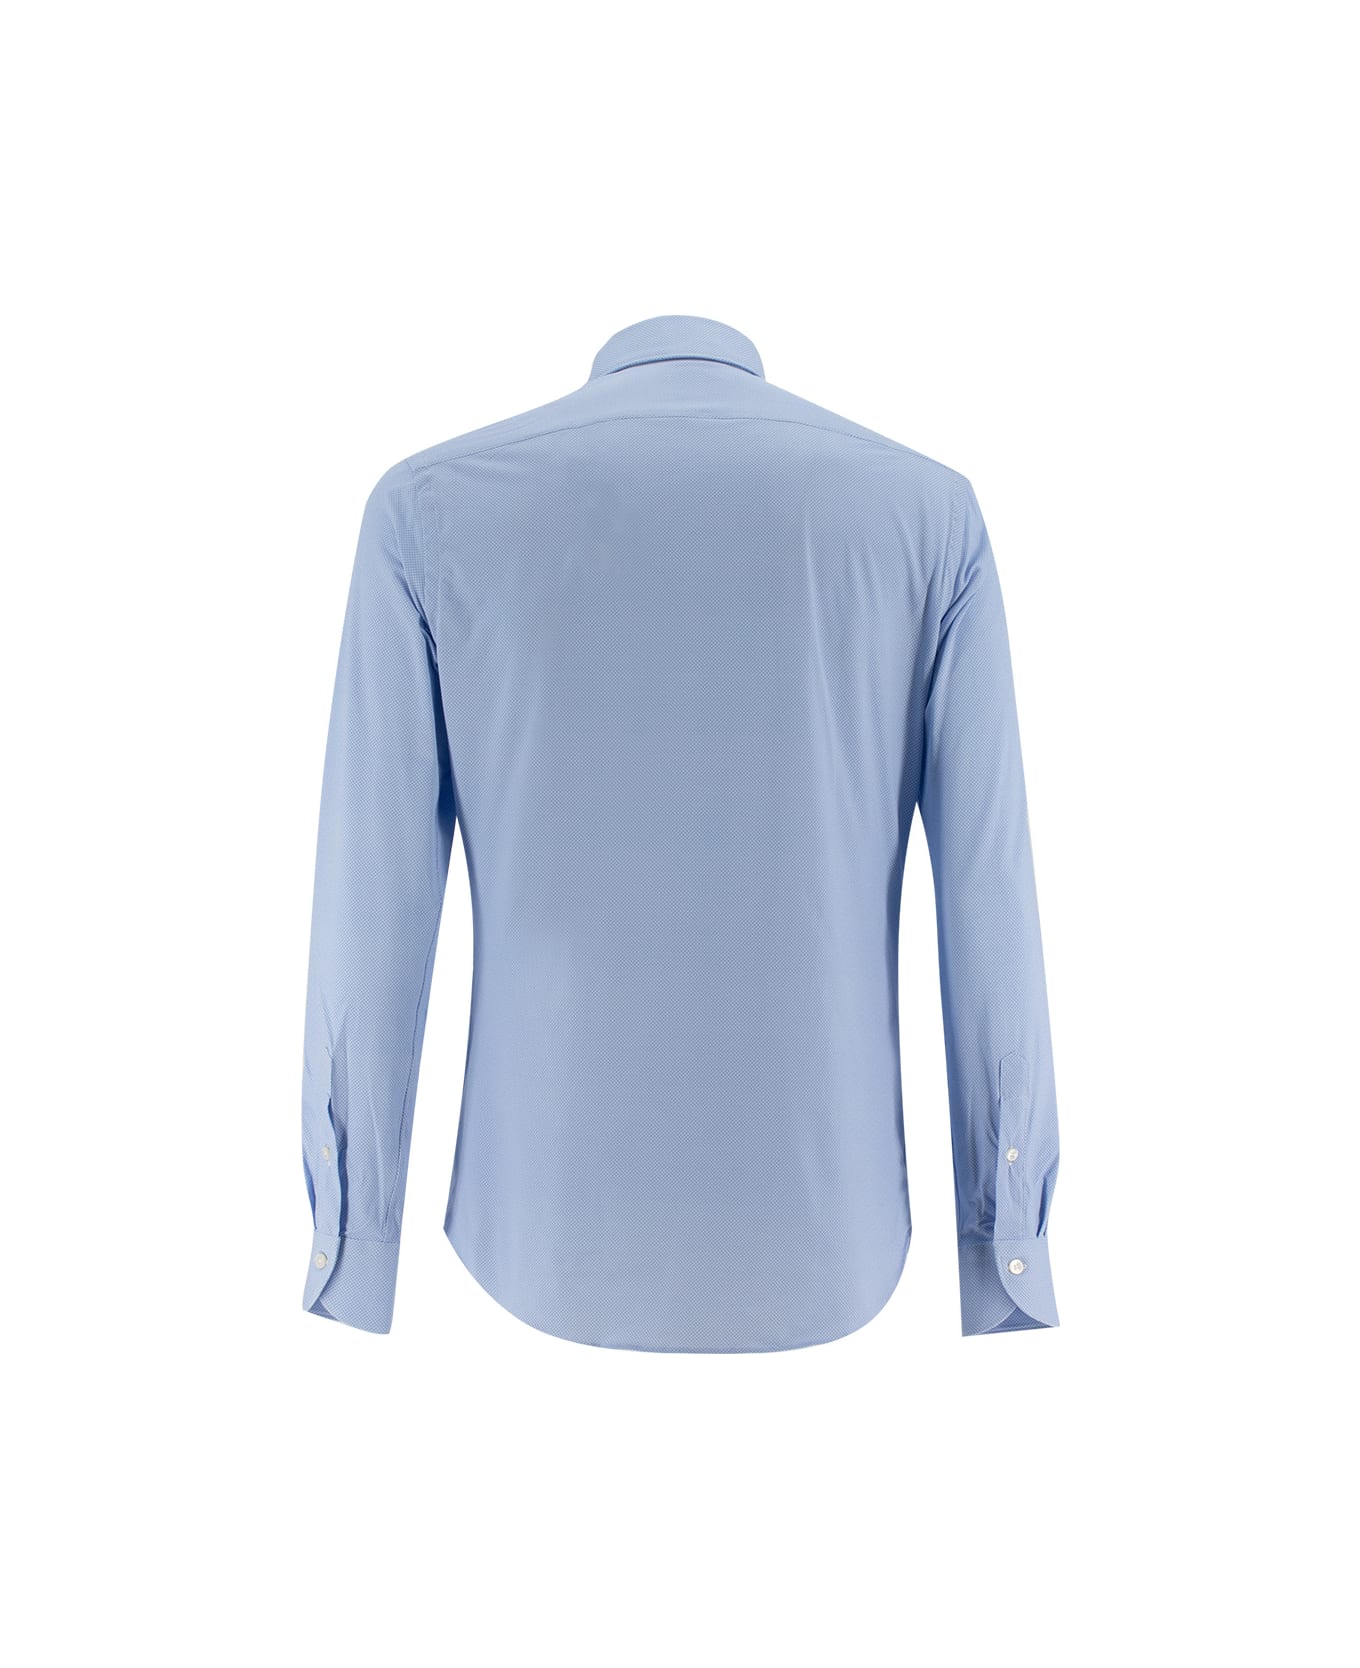 Xacus Shirt - BLUE シャツ